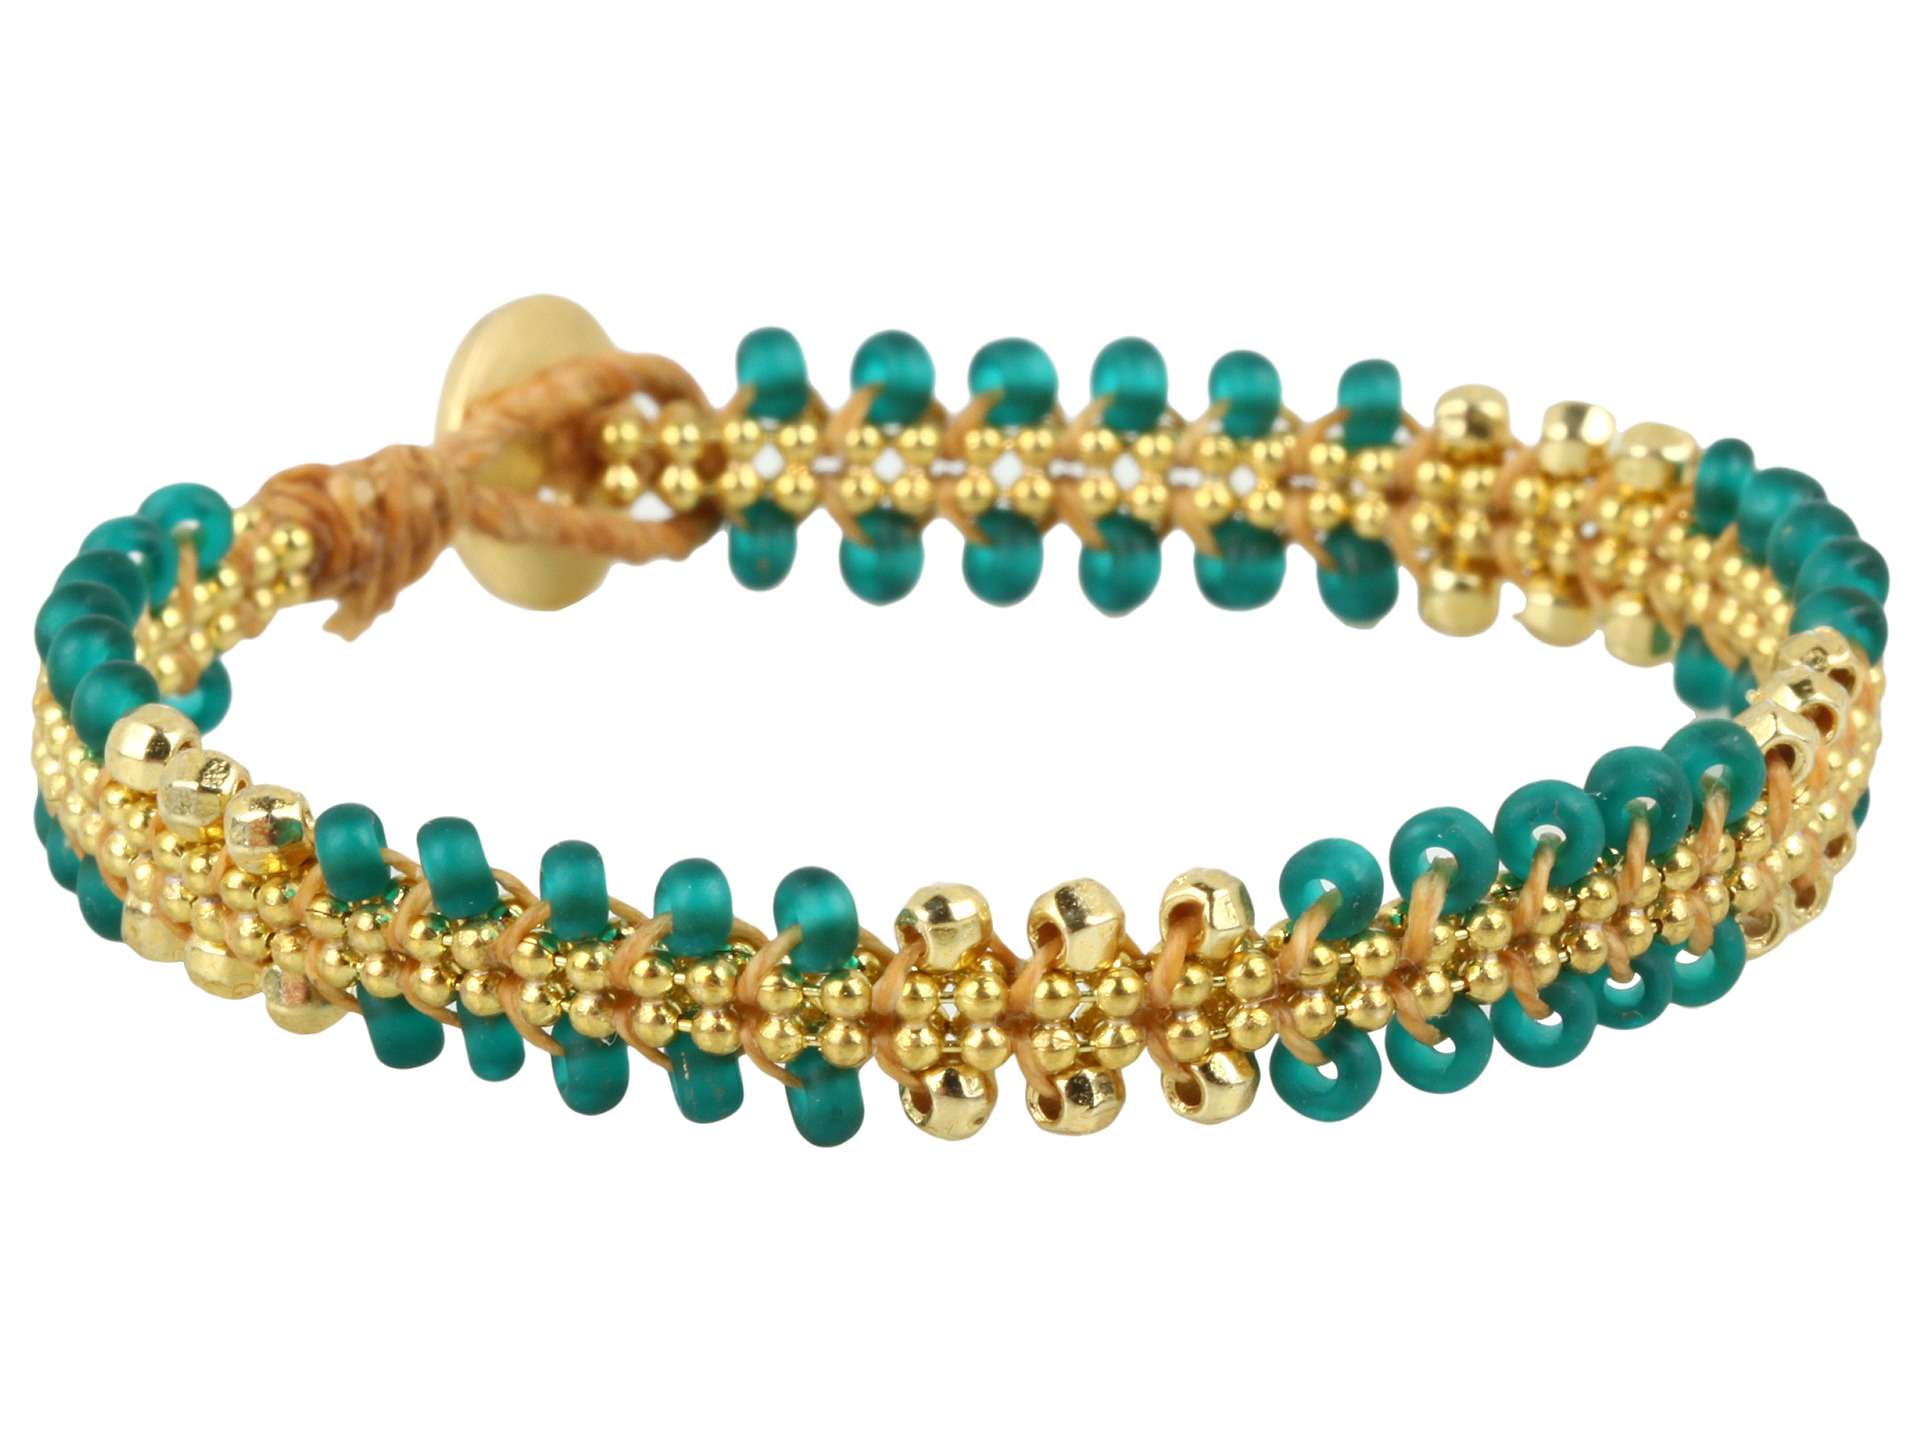 Dogeared Jewels Chain Parallel Bead Bracelet $69.99 $77.00 SALE